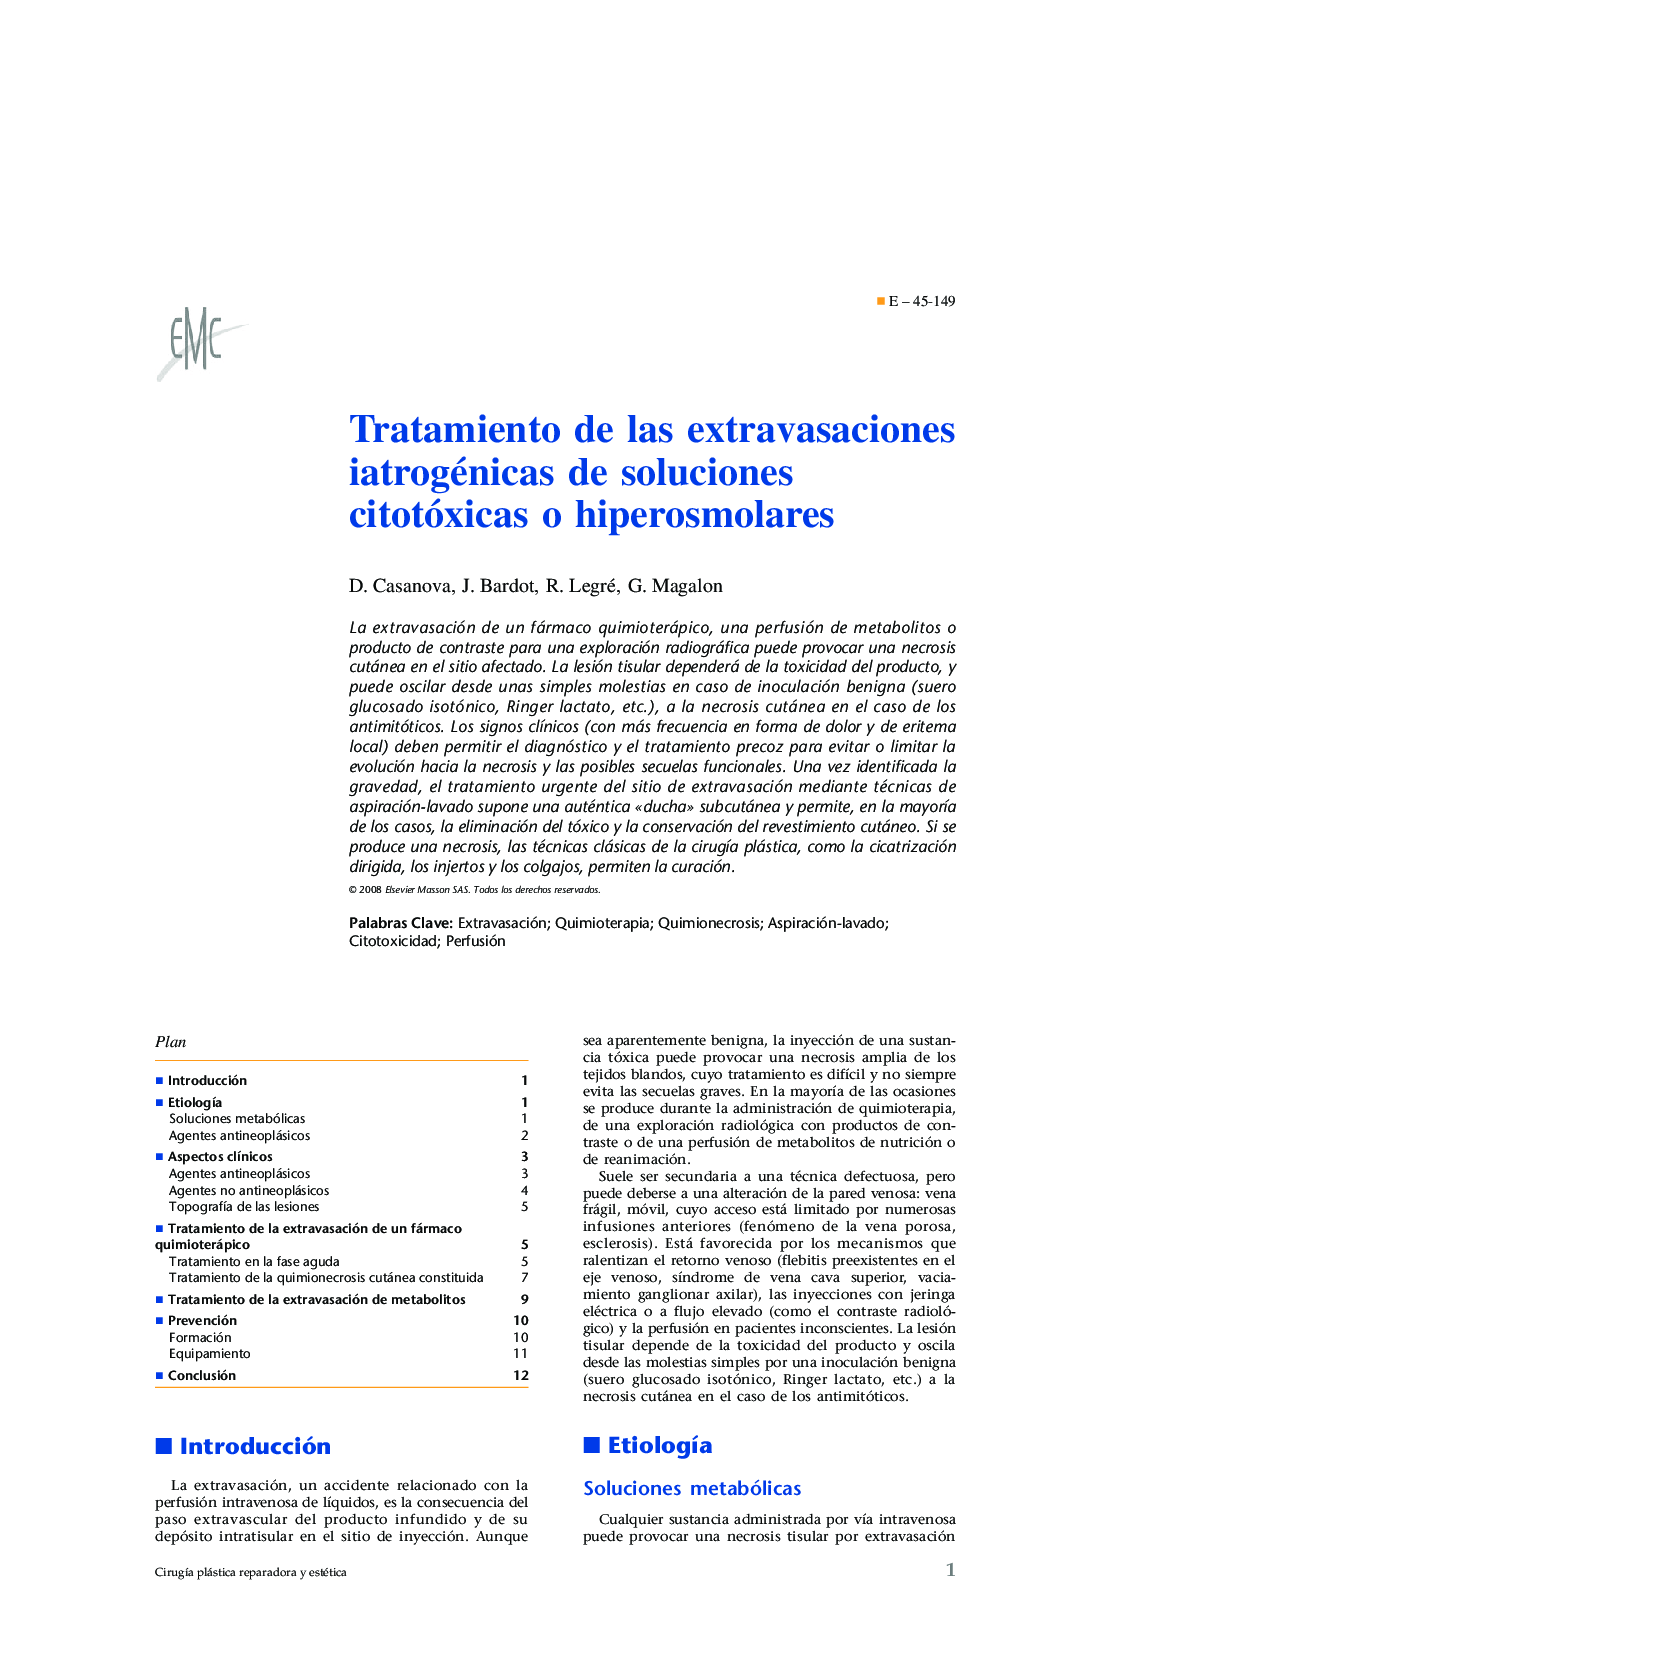 Tratamiento de las extravasaciones iatrogénicas de soluciones citotóxicas o hiperosmolares